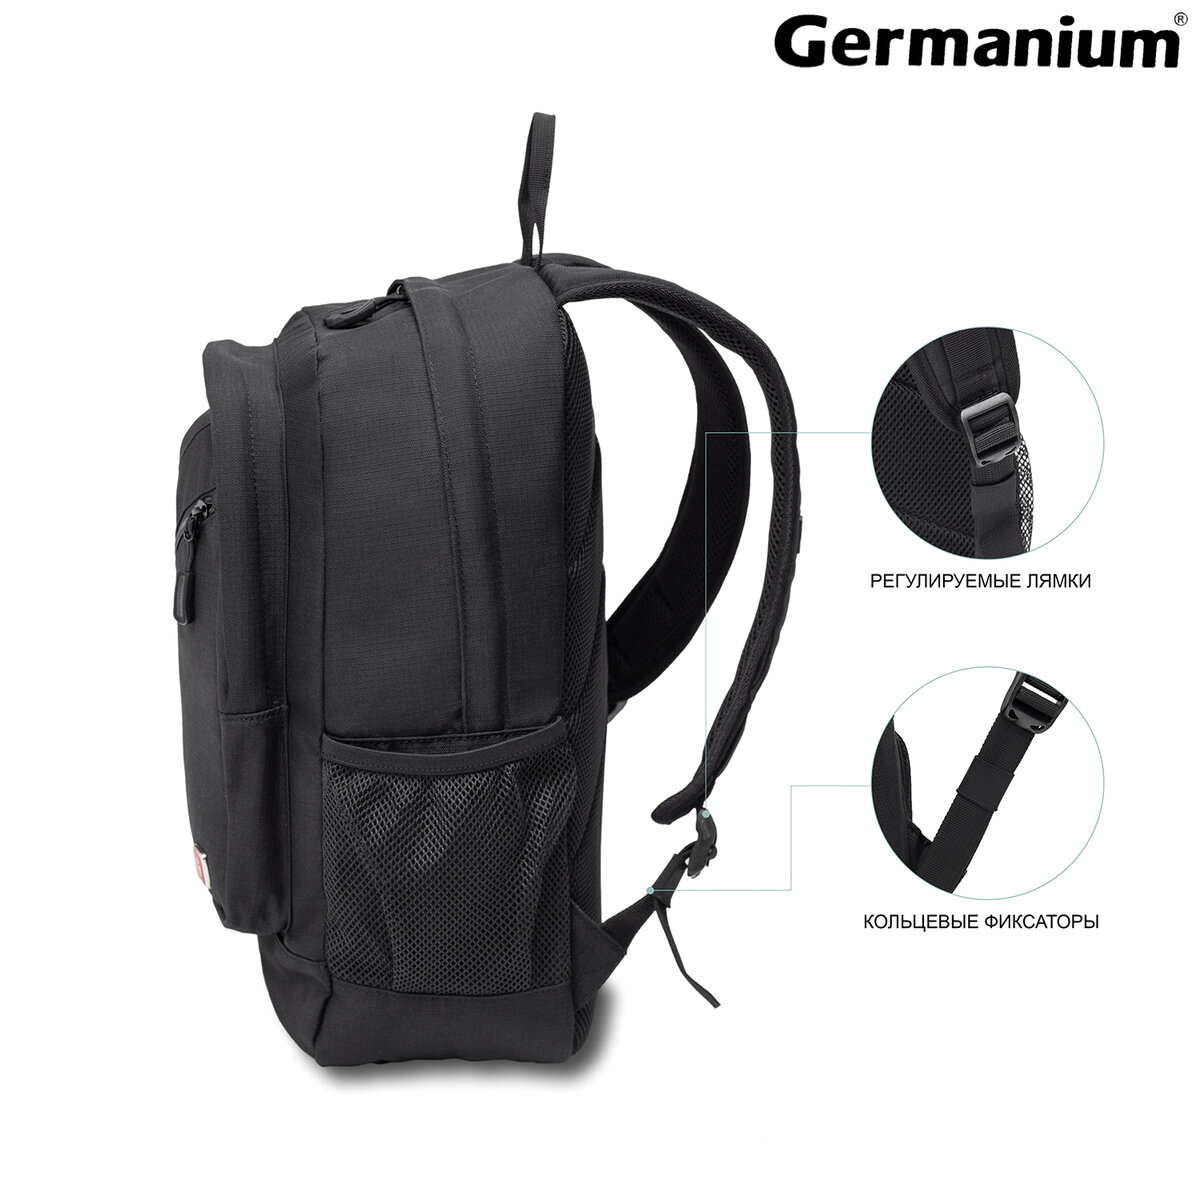 Рюкзак Germanium S-09 универсальный с отделением для ноутбука черный - фото 6